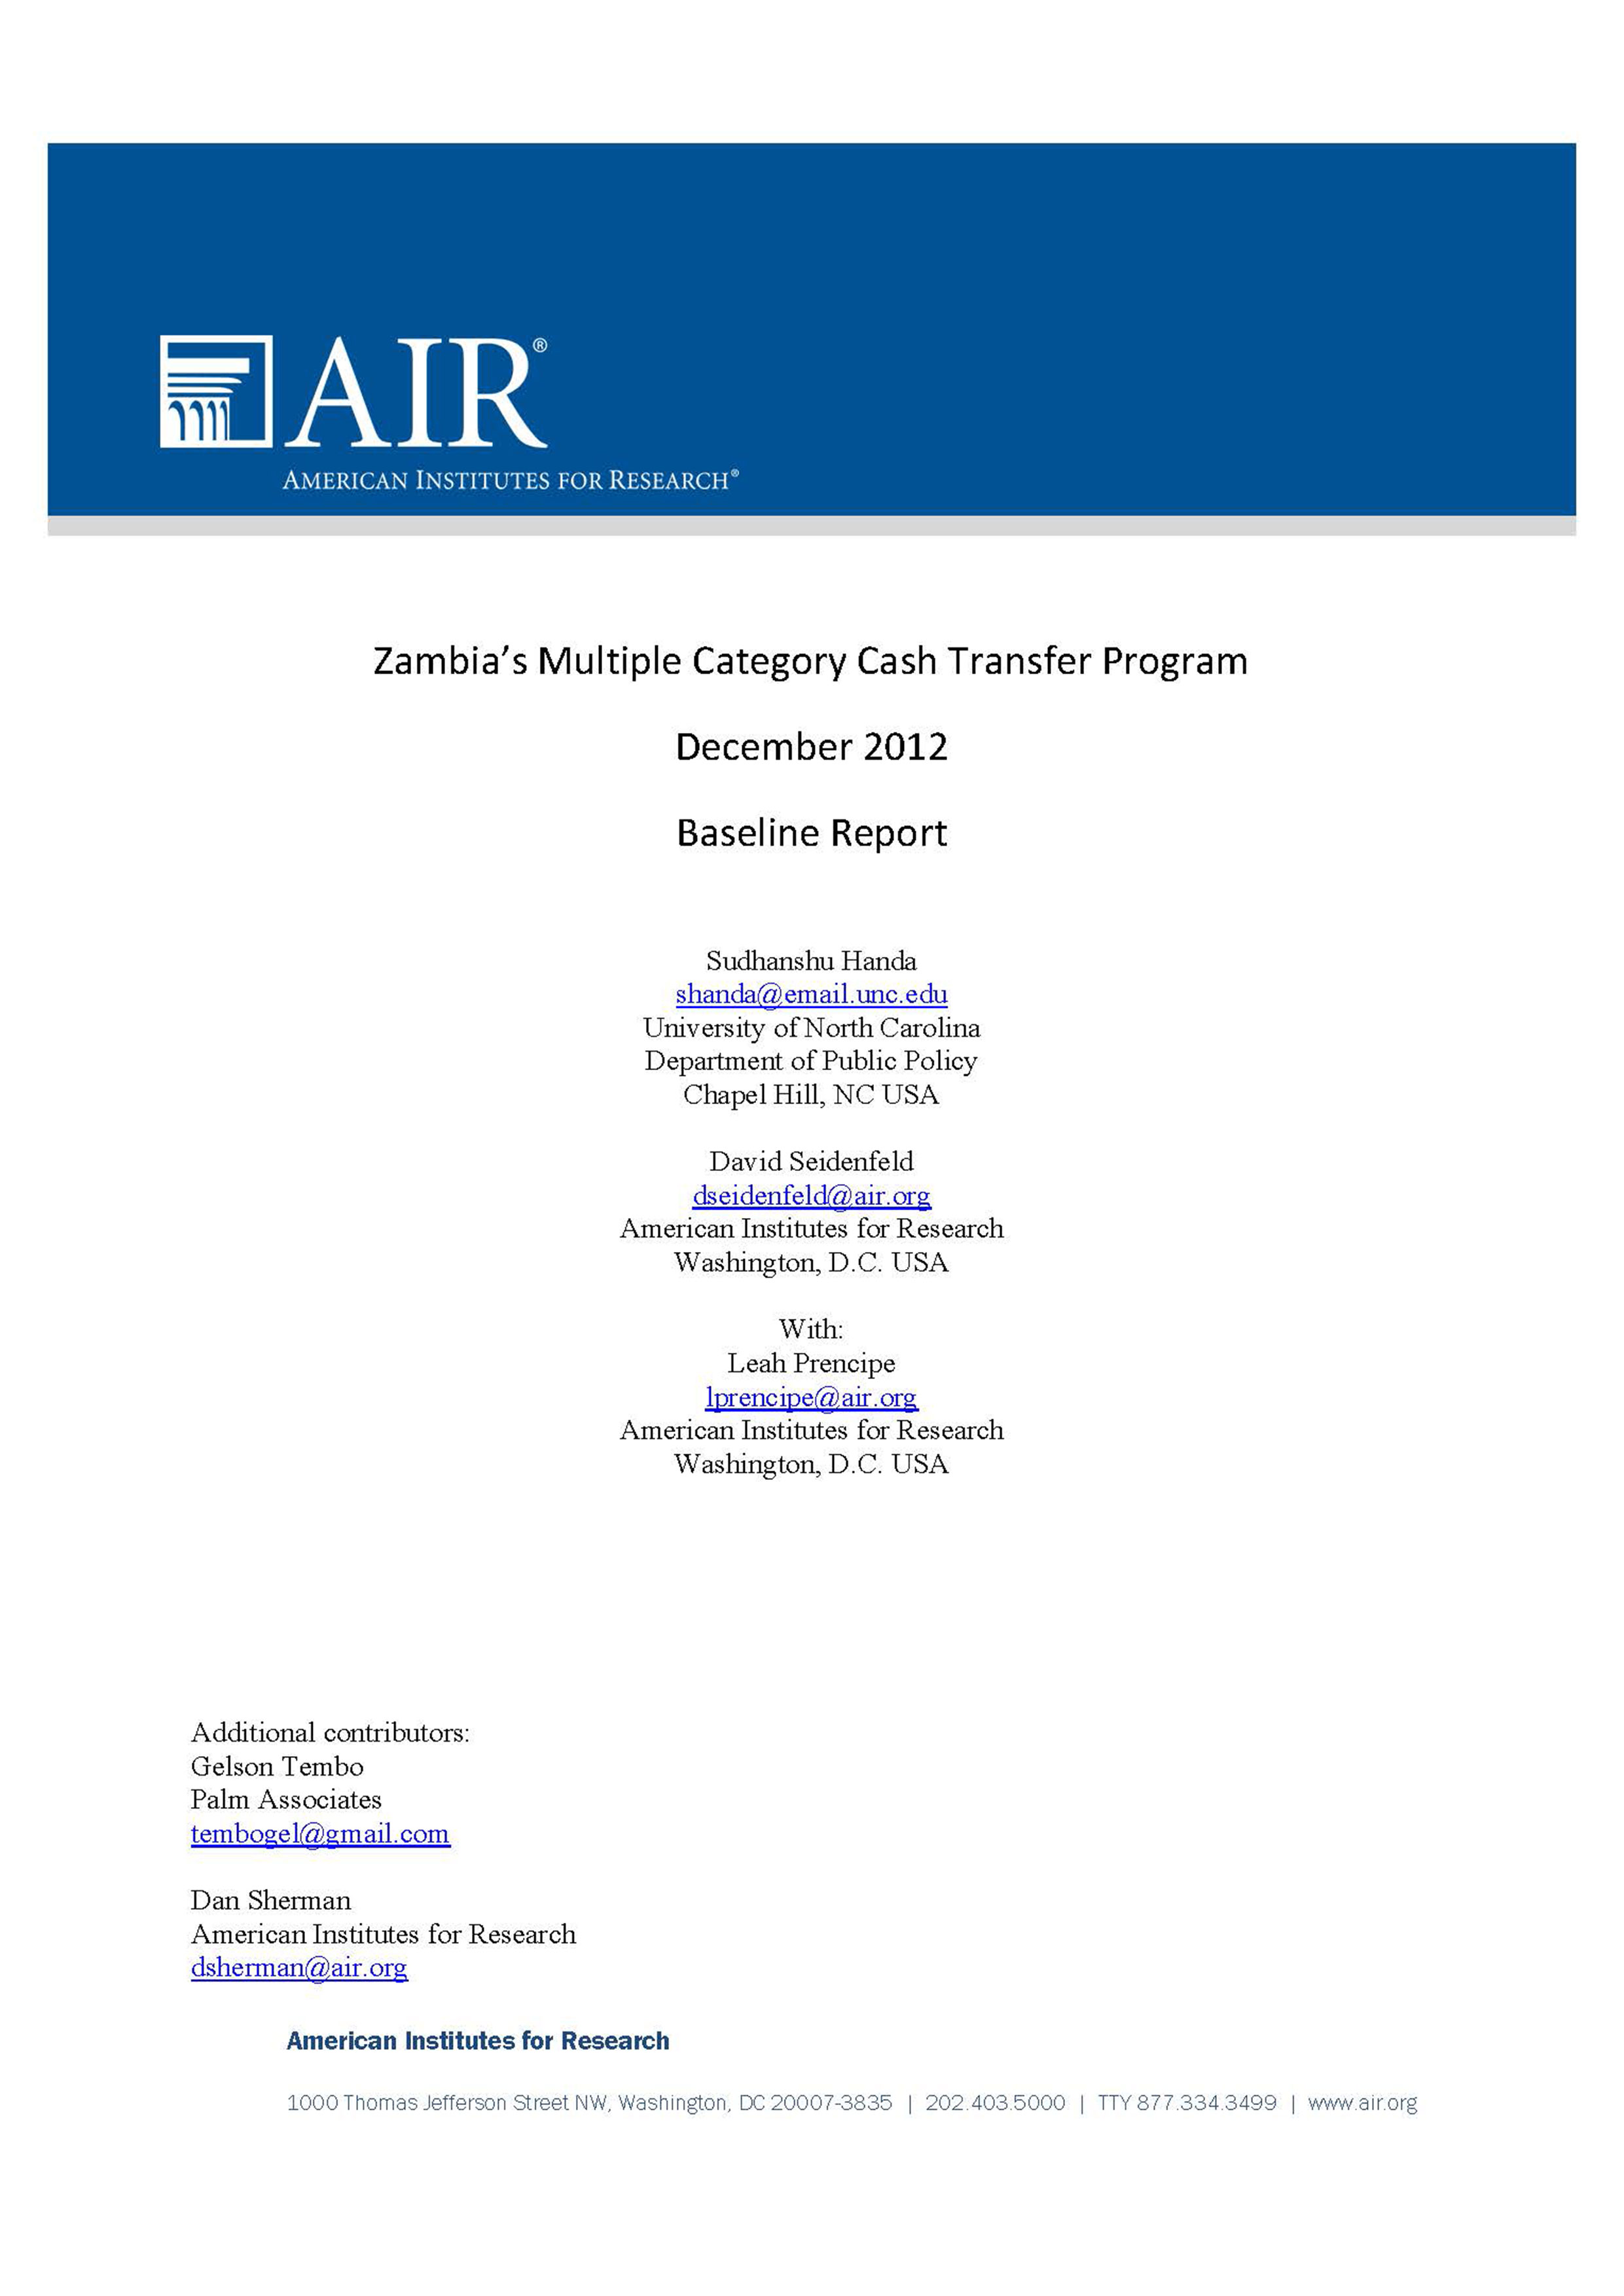 Baseline Study of Zambia’s Multi-Category Cash Transfer Programme